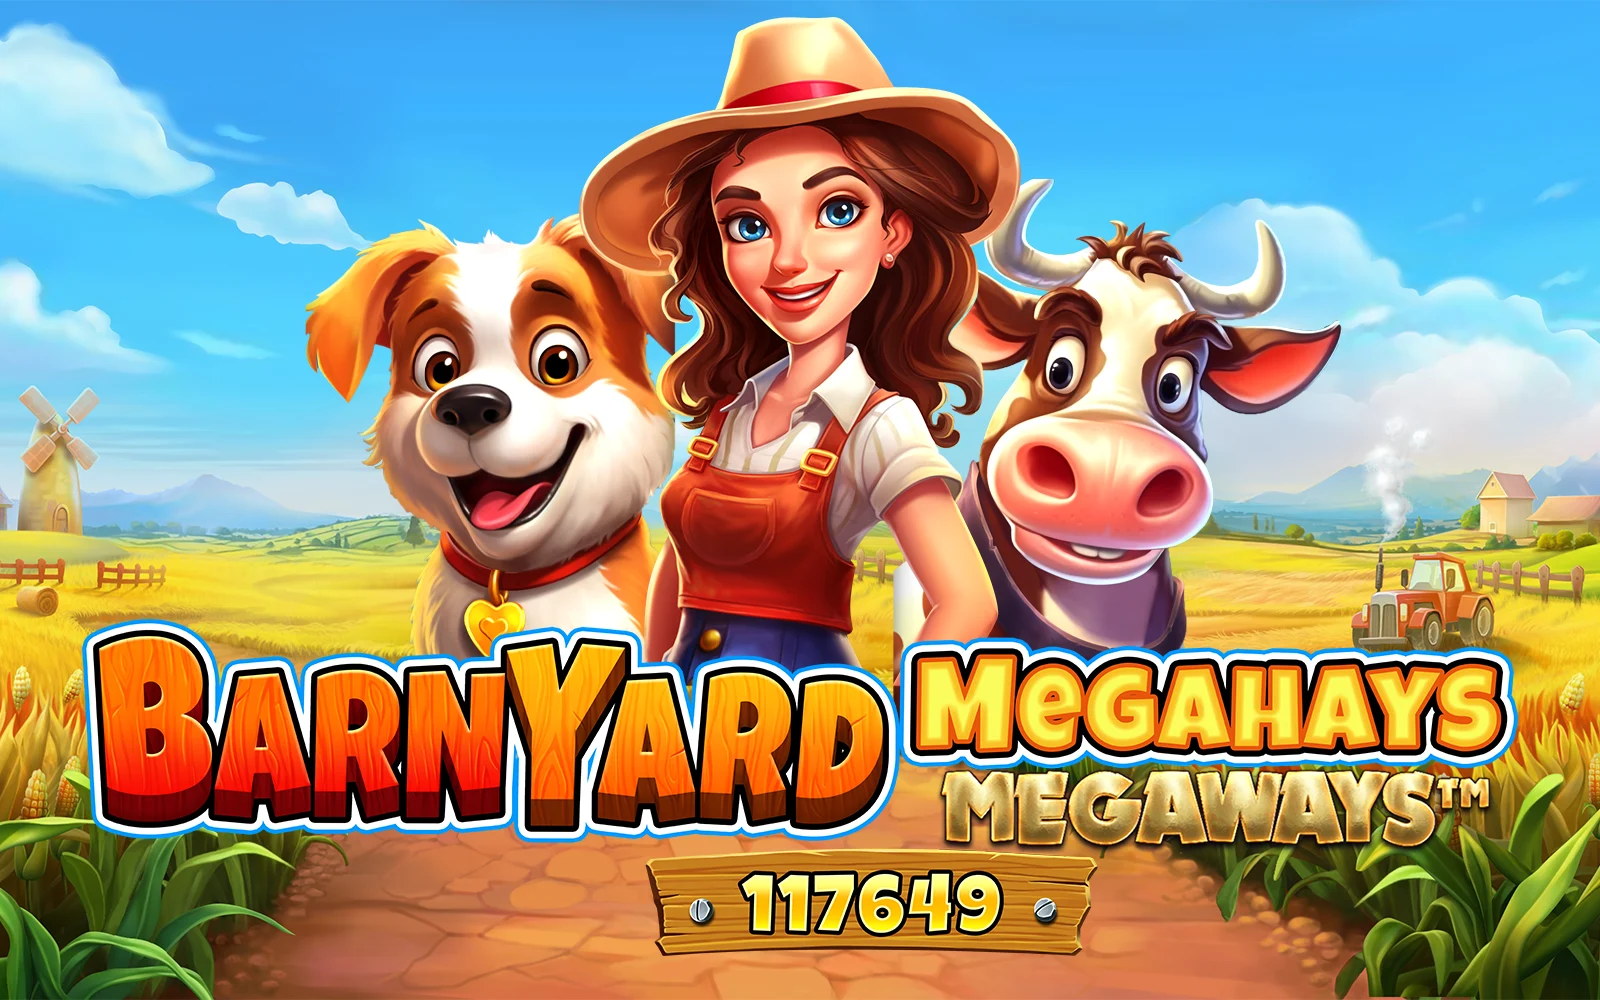 Грайте у Barnyard Megahays Megaways™ в онлайн-казино Starcasino.be